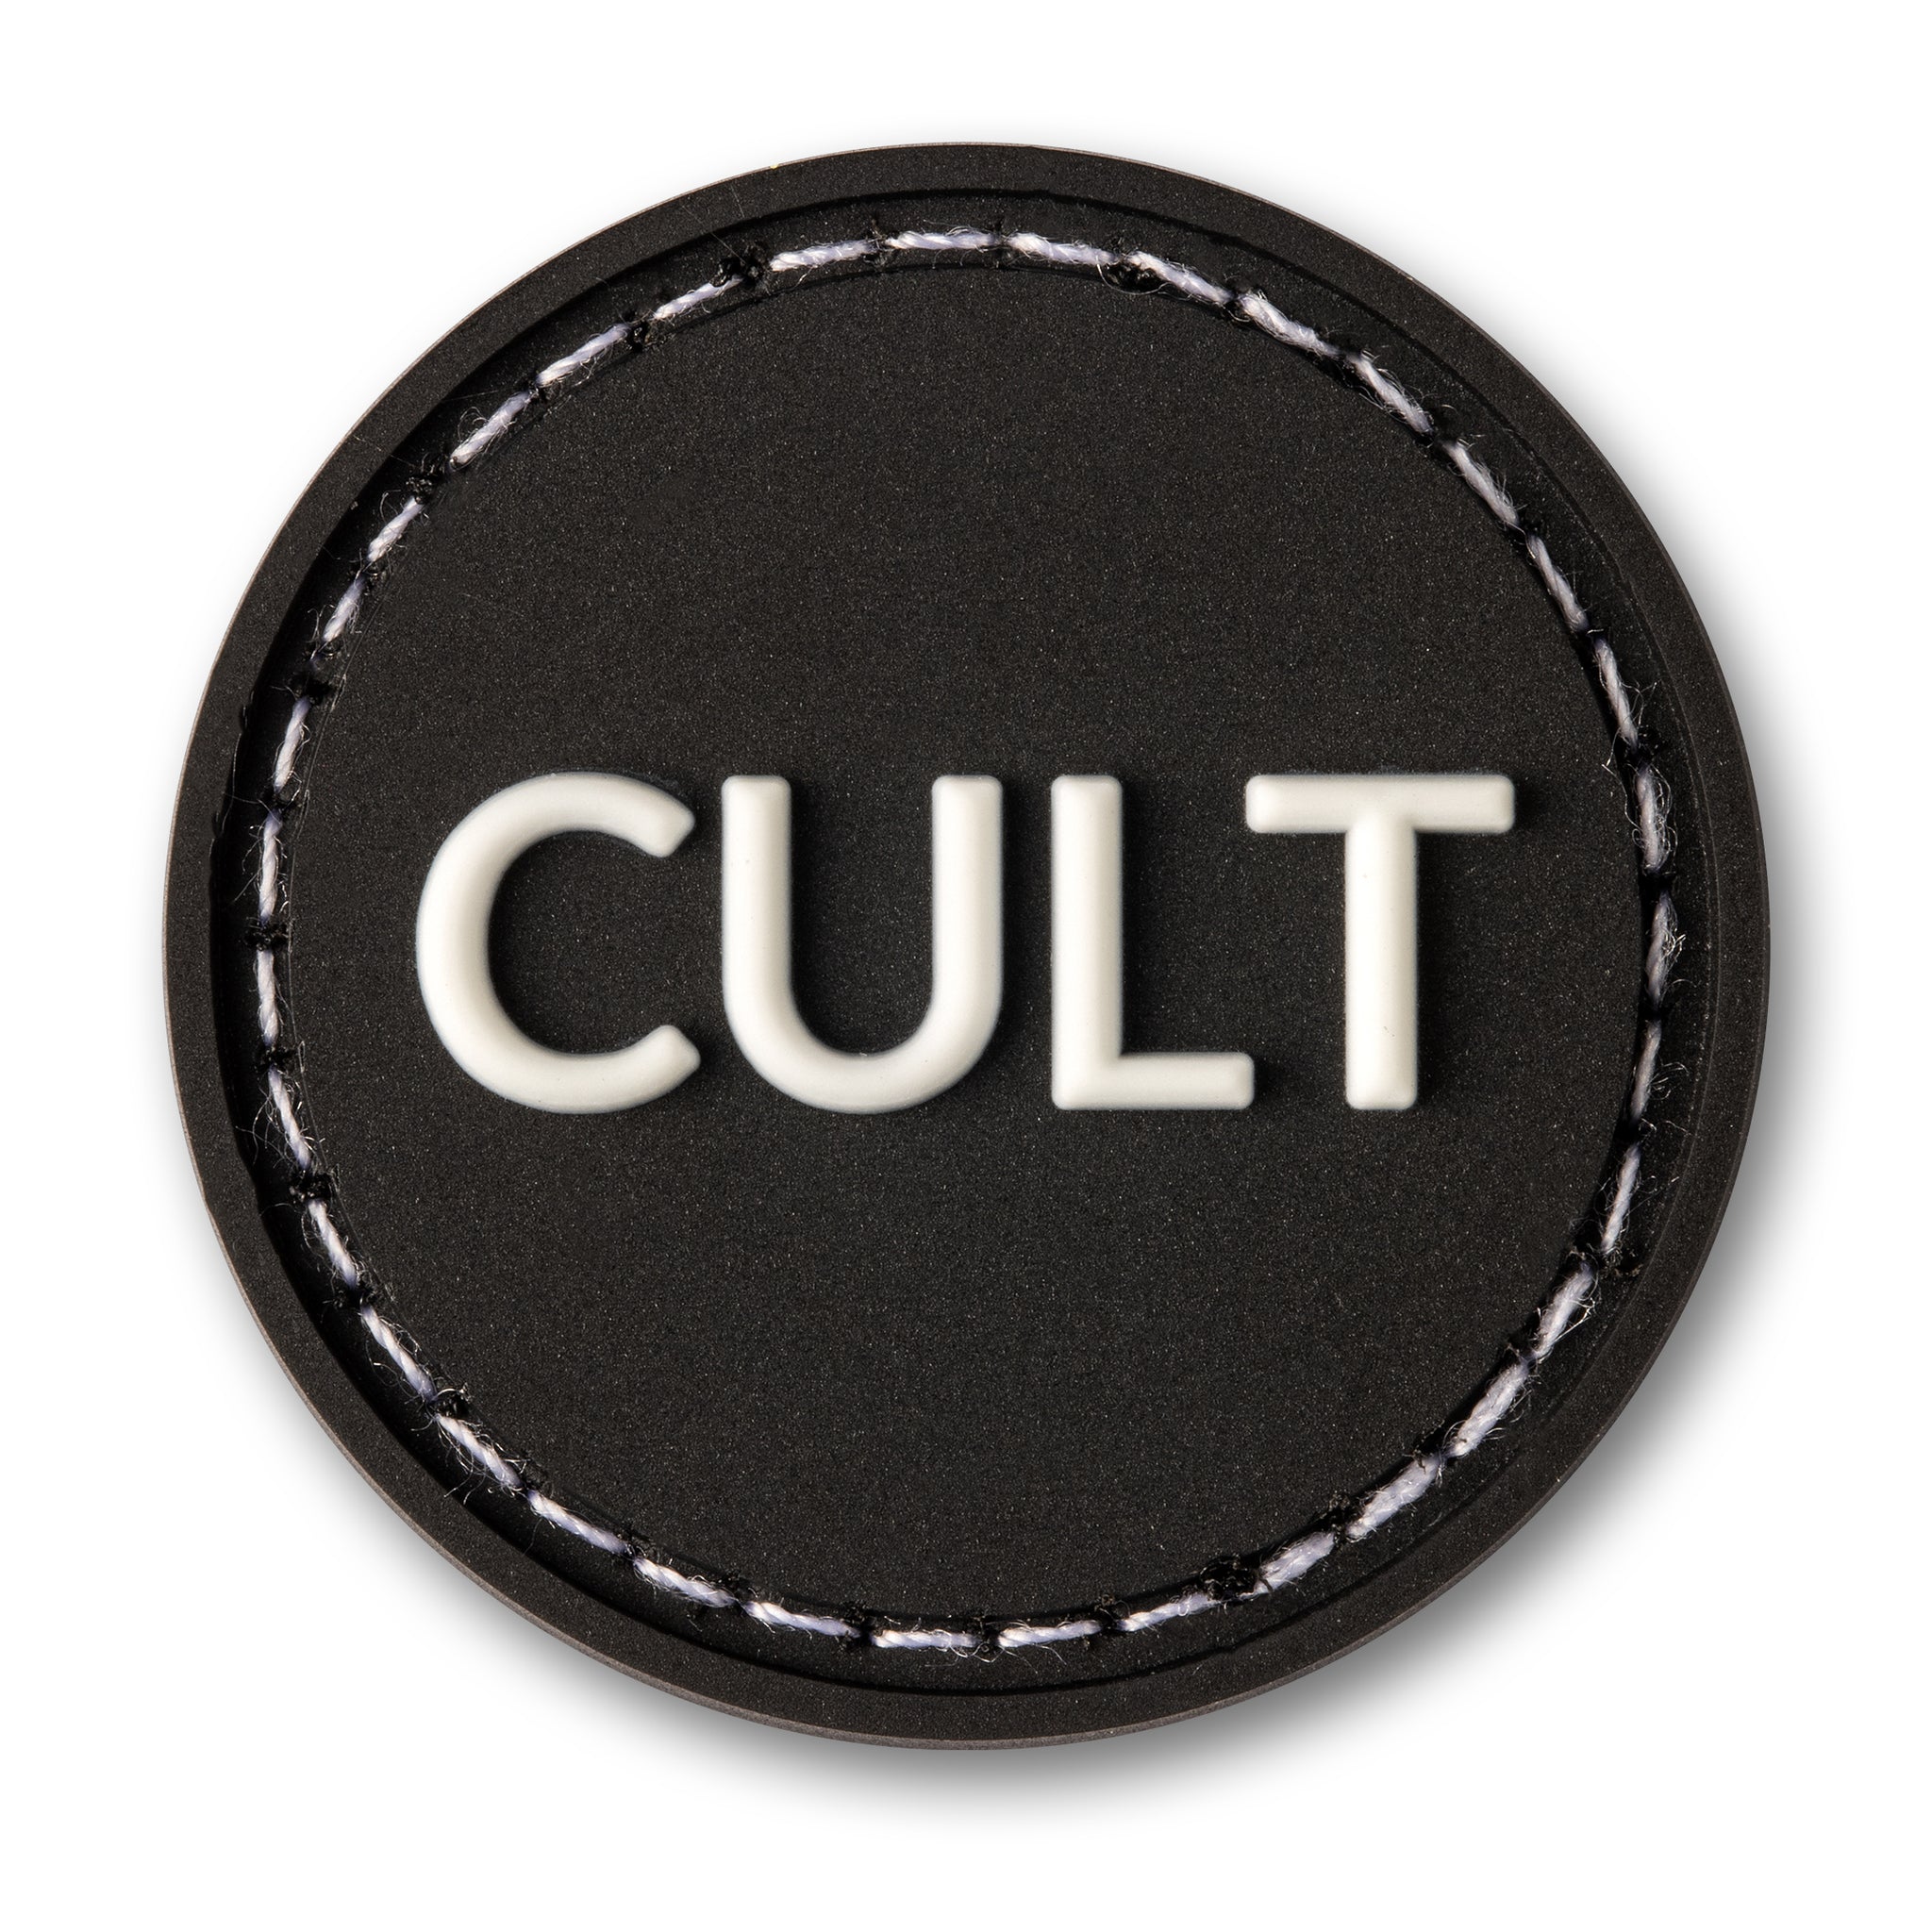 Cult RE - datacrew